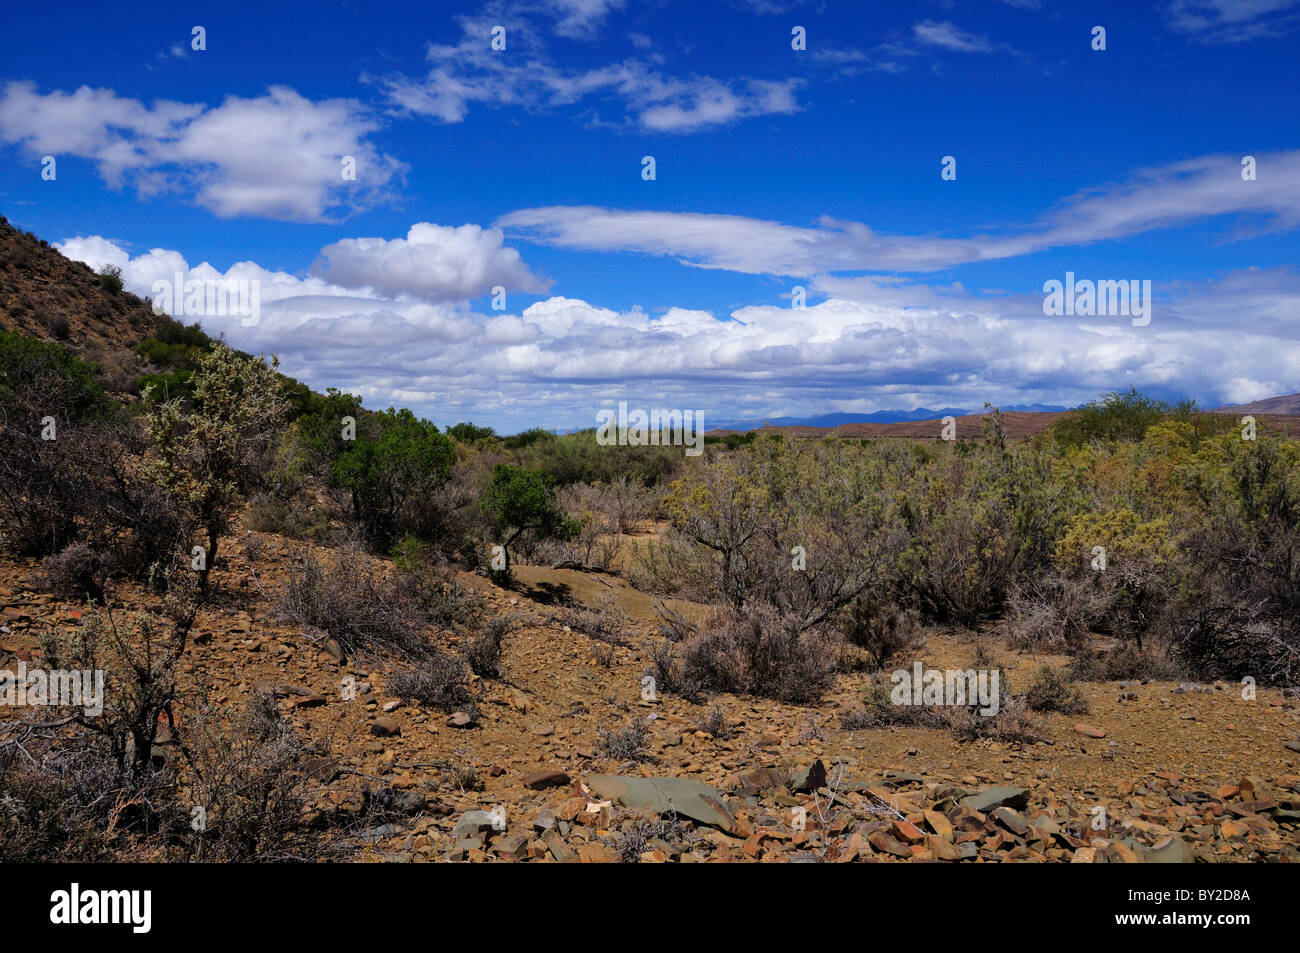 Desert landscape of Karoo basin, South Africa. Stock Photo